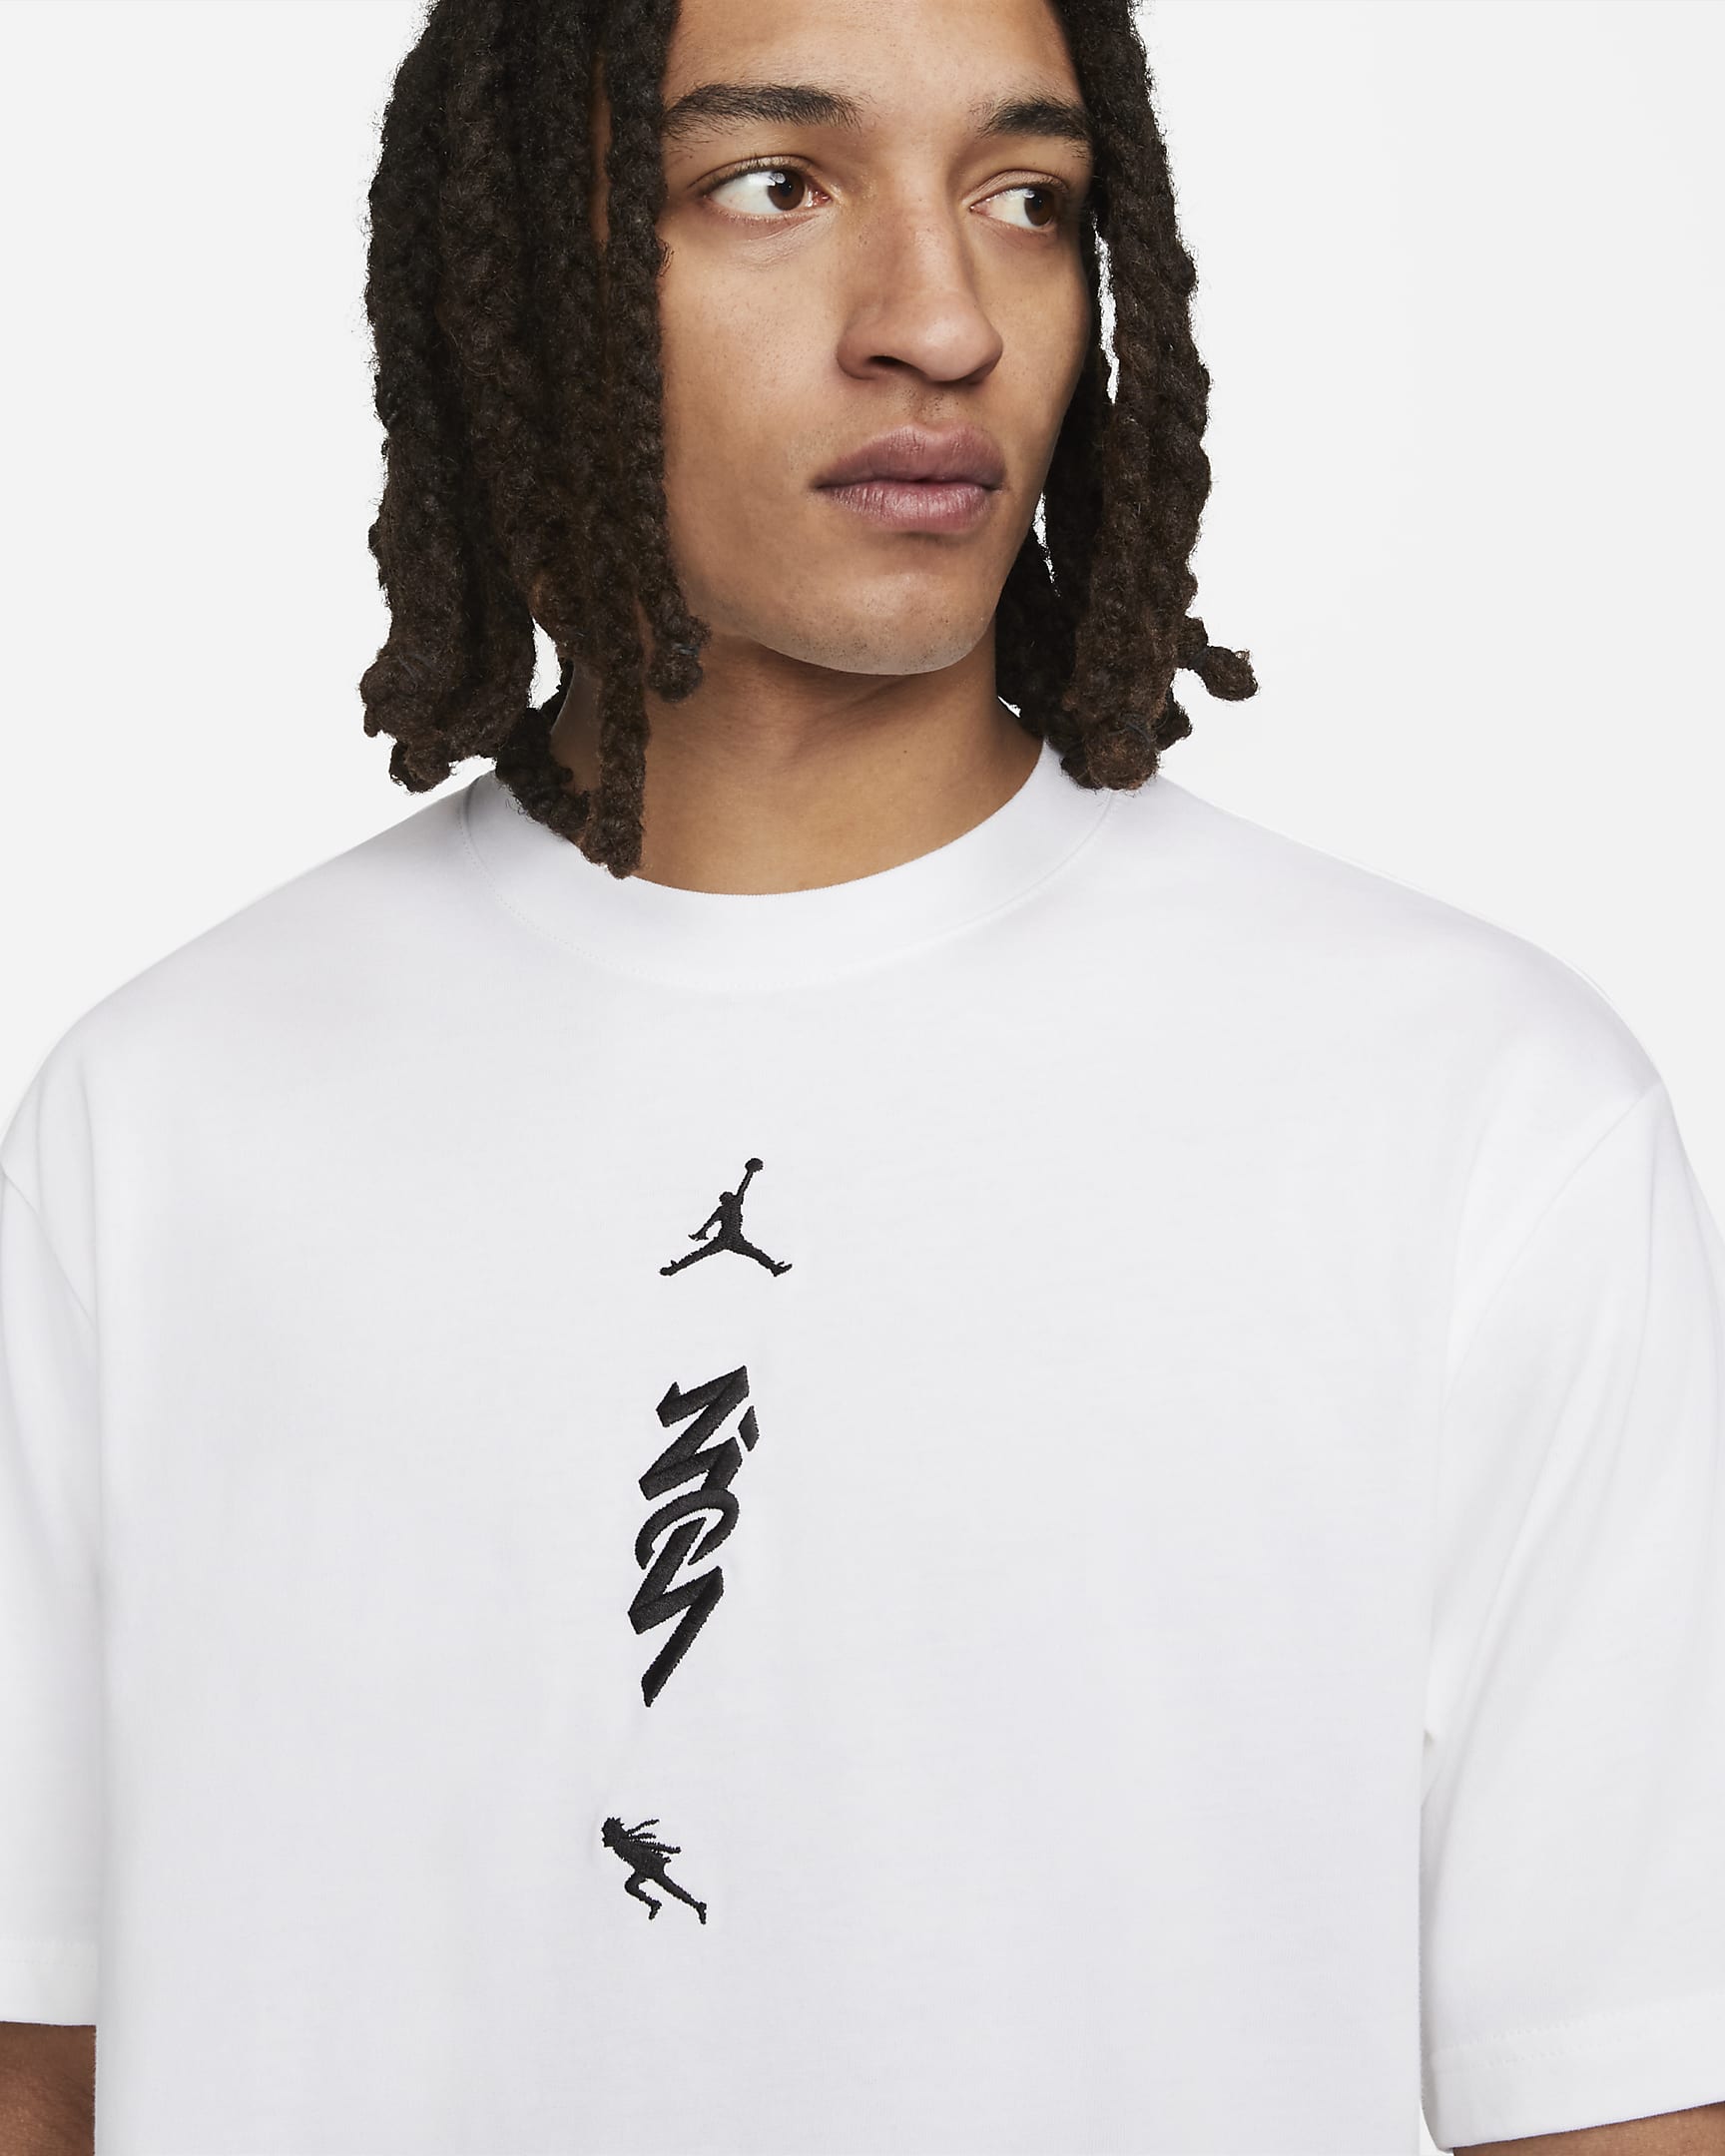 Zion x Naruto Men's T-shirt. Nike IN